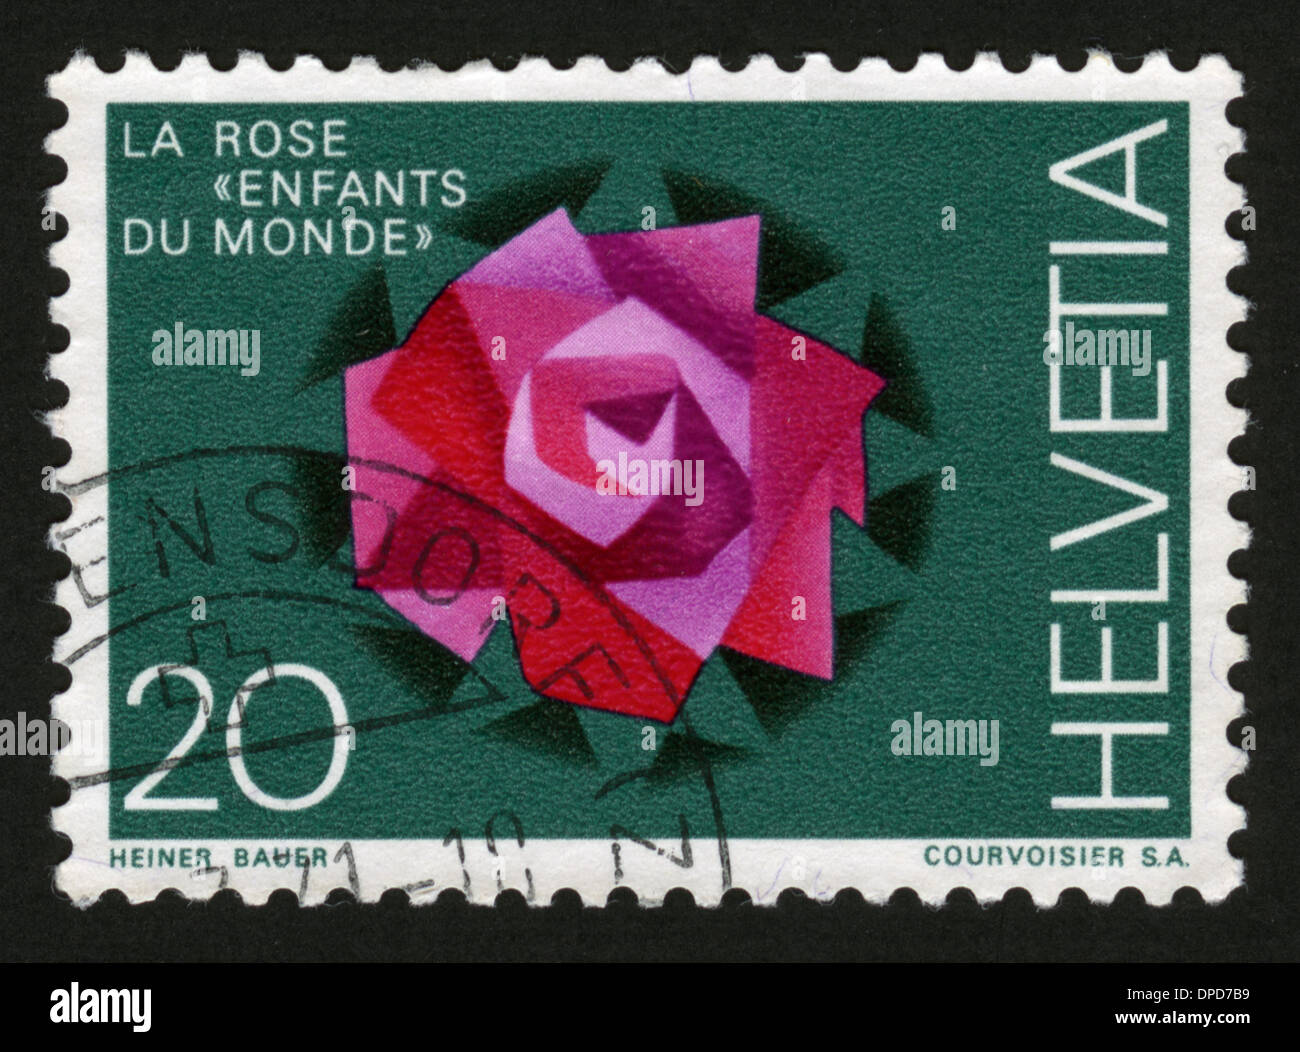 La Svizzera, Helvetia, francobollo, post mark, timbro timbro postale, Foto Stock